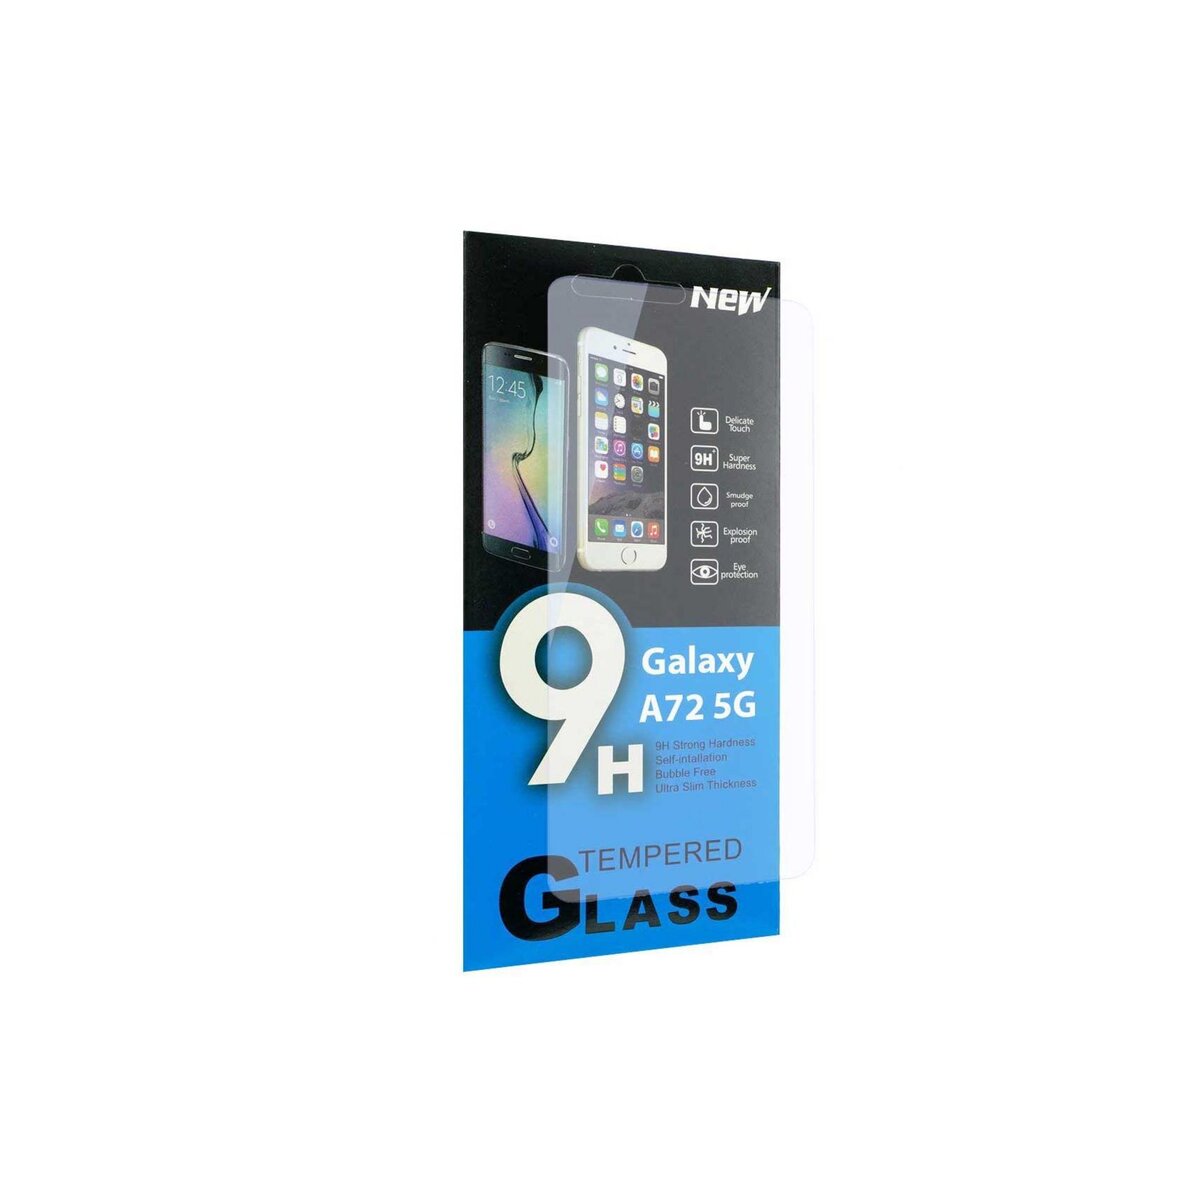 amahousse Vitre de protection d'écran iPhone XR en verre trempé